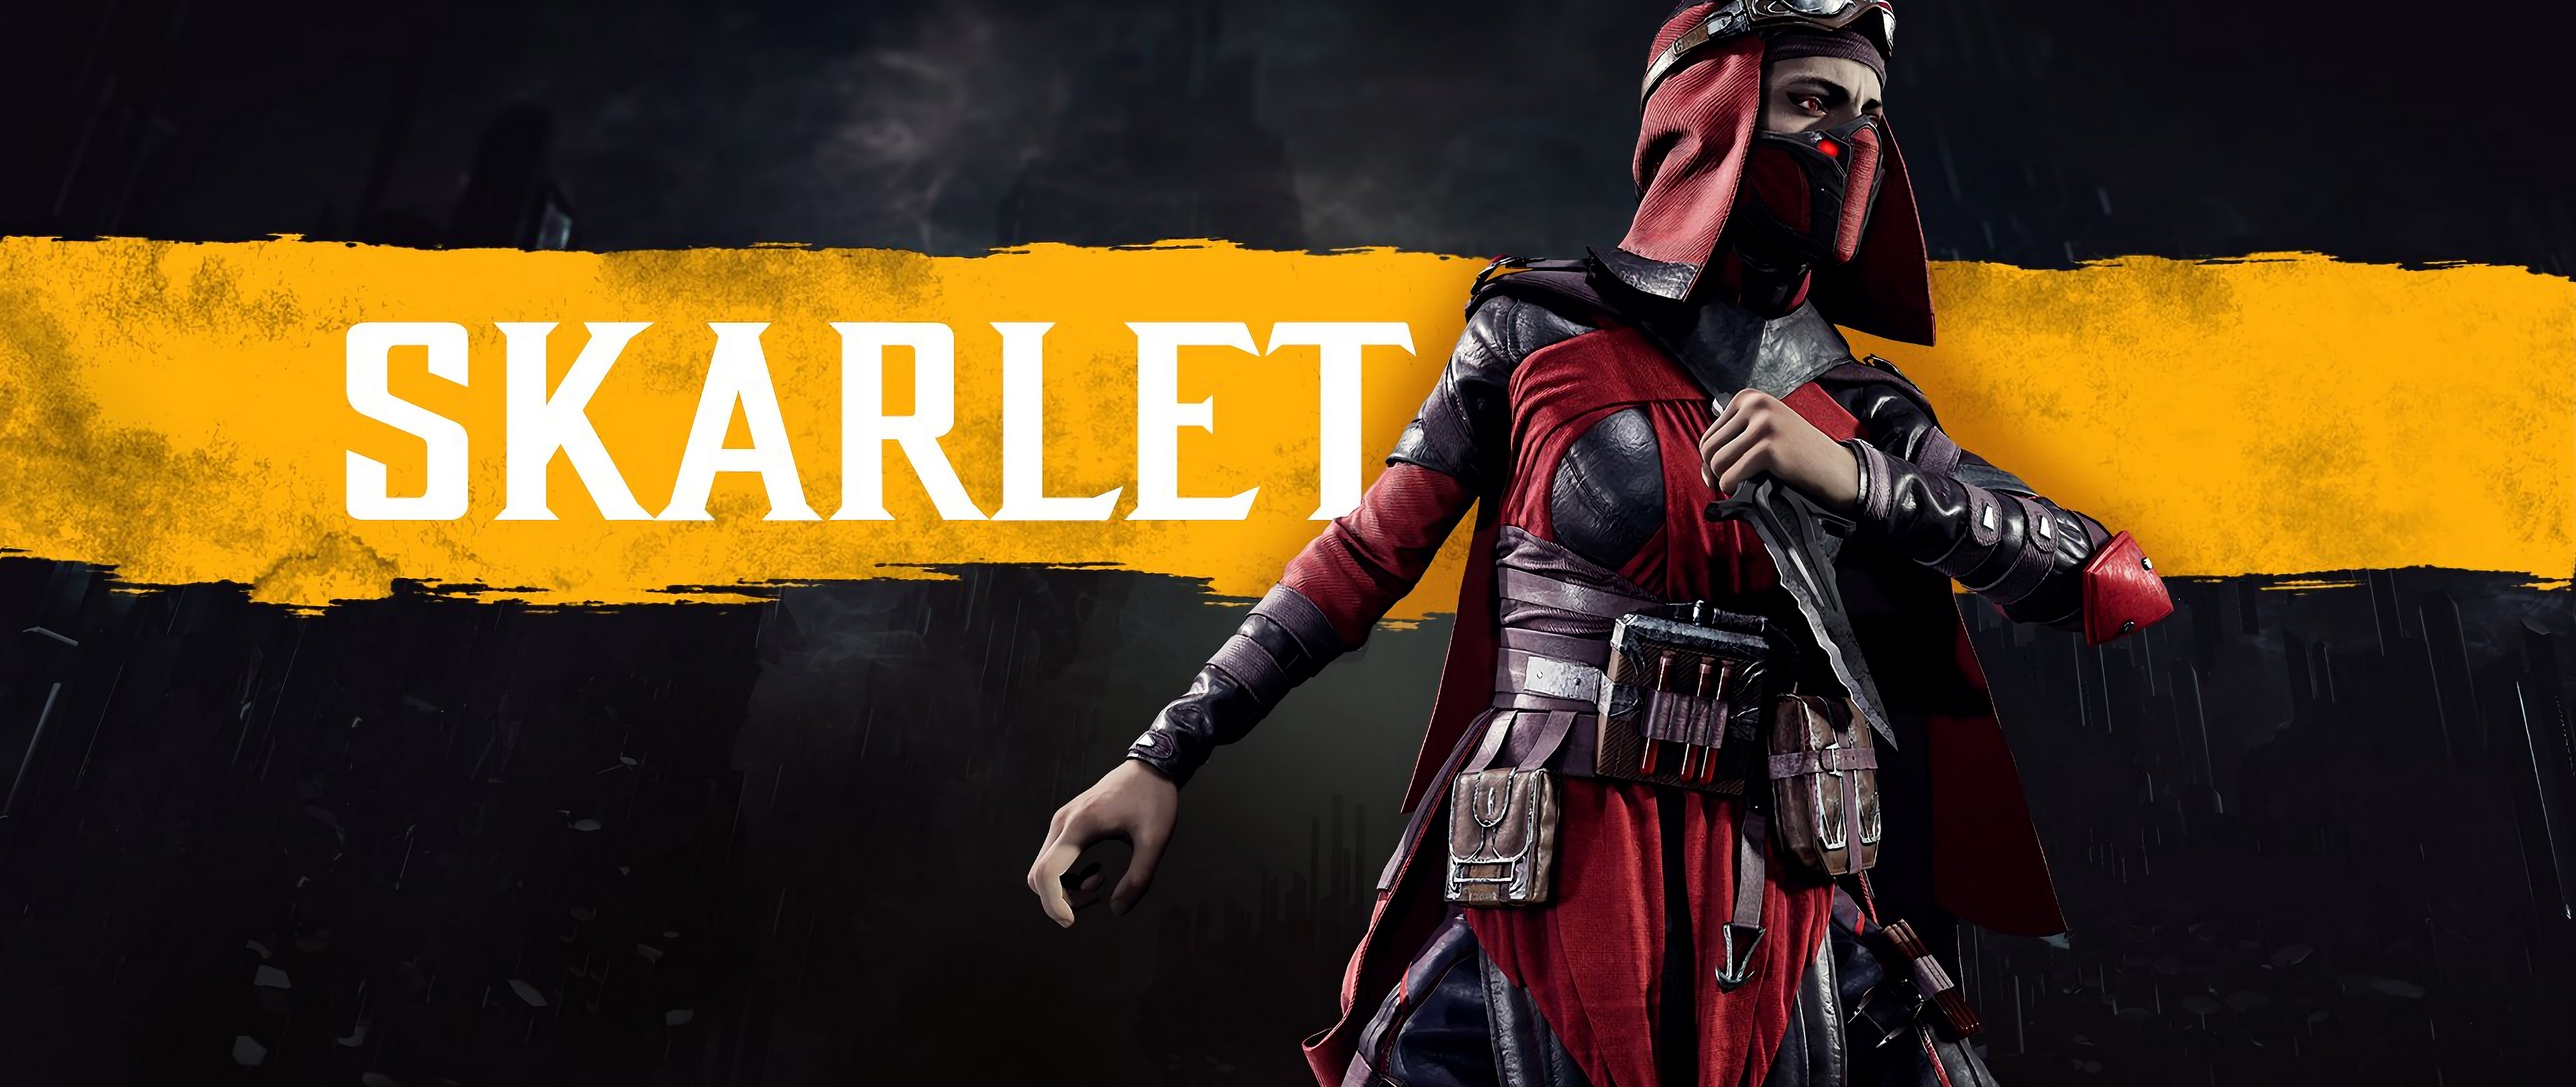 Scarlet vk. Скарлет мортал комбат 11. Mortal Kombat 11 Scarlett. Скарлет из Mortal Kombat 11.